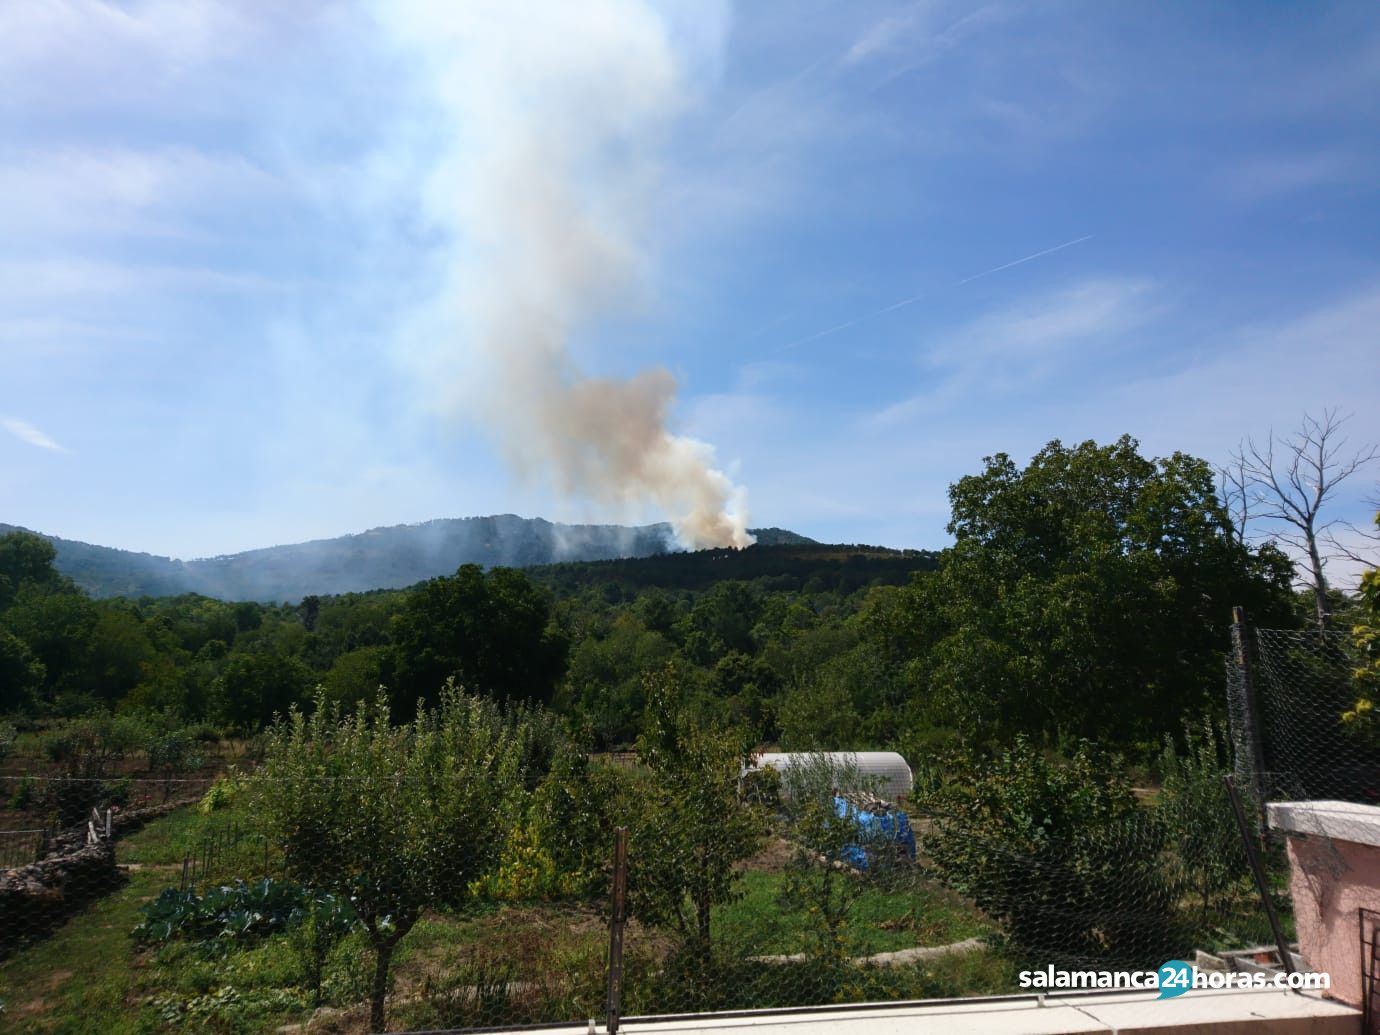  Incendio La Alberca (1) 